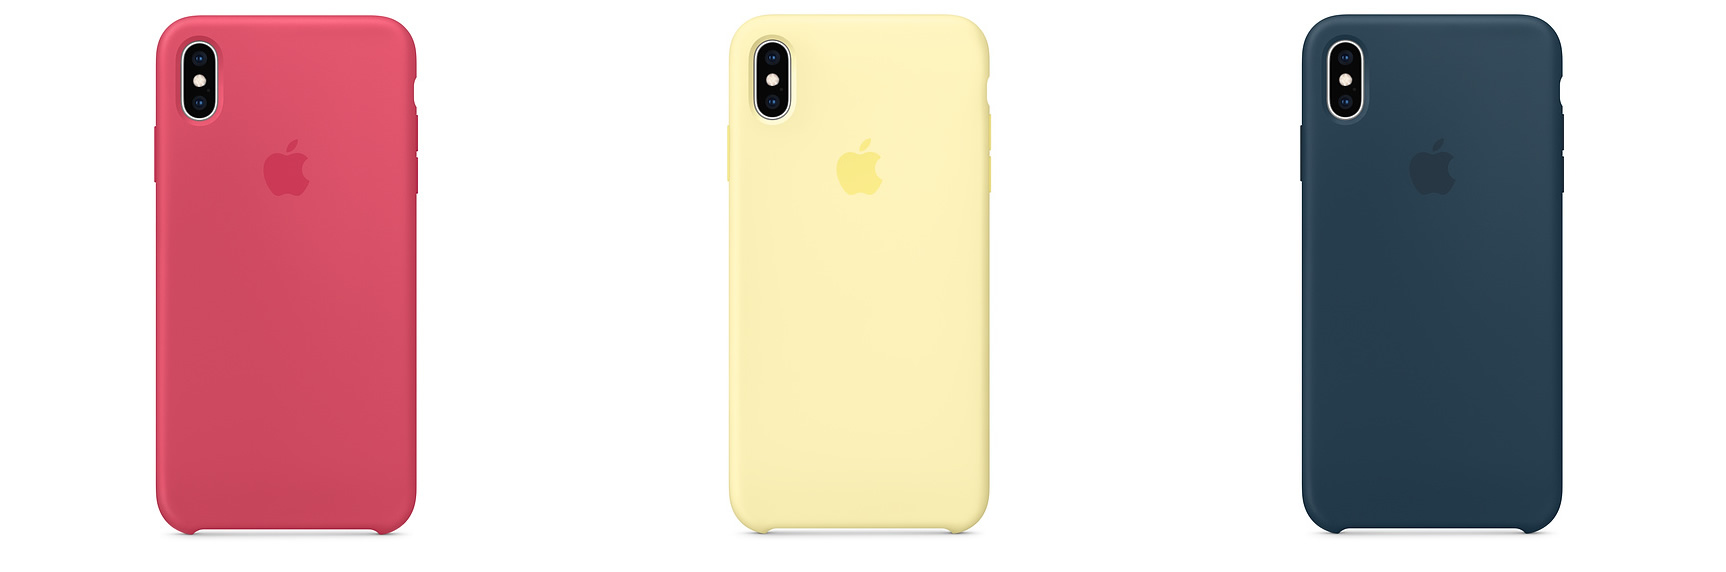 Apple、｢iPhone XS/XS Max｣向けシリコーンケースに新色を3色追加